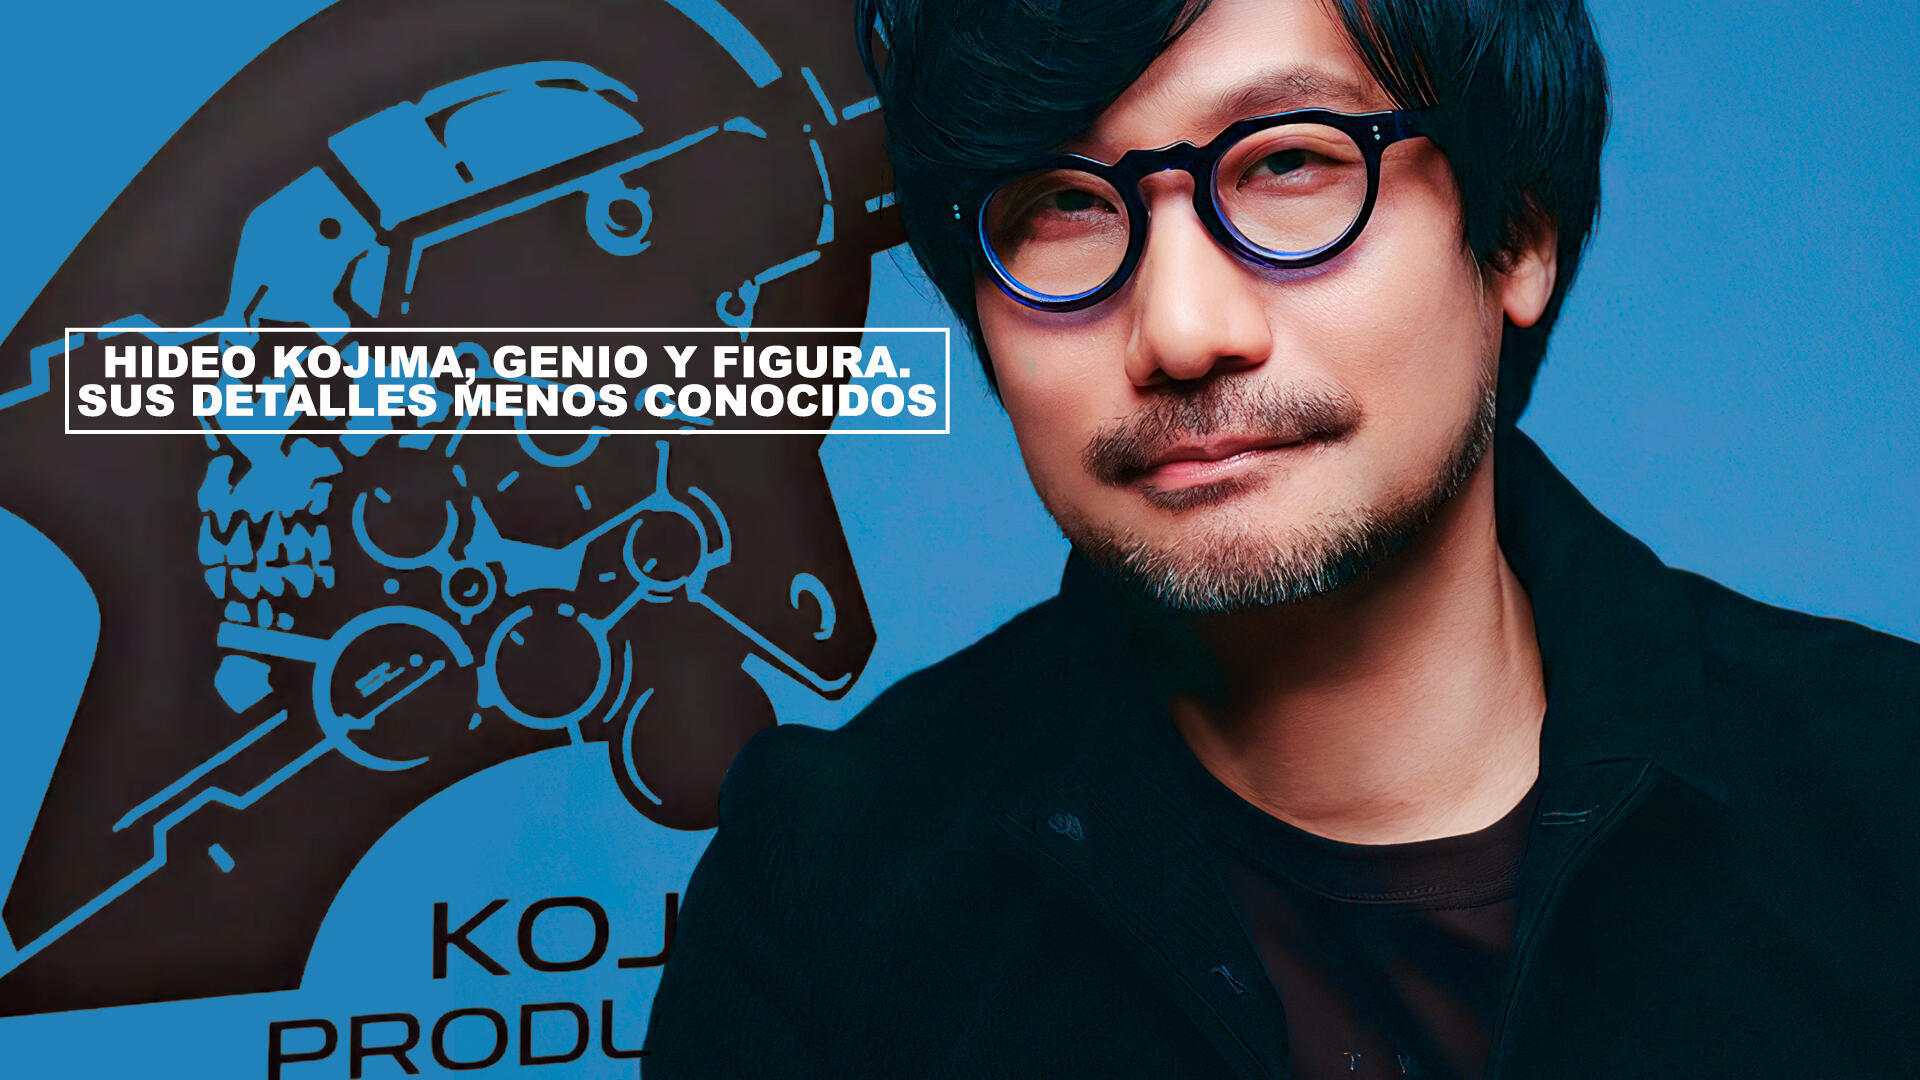 Hideo Kojima, genio y figura. Sus detalles menos conocidos